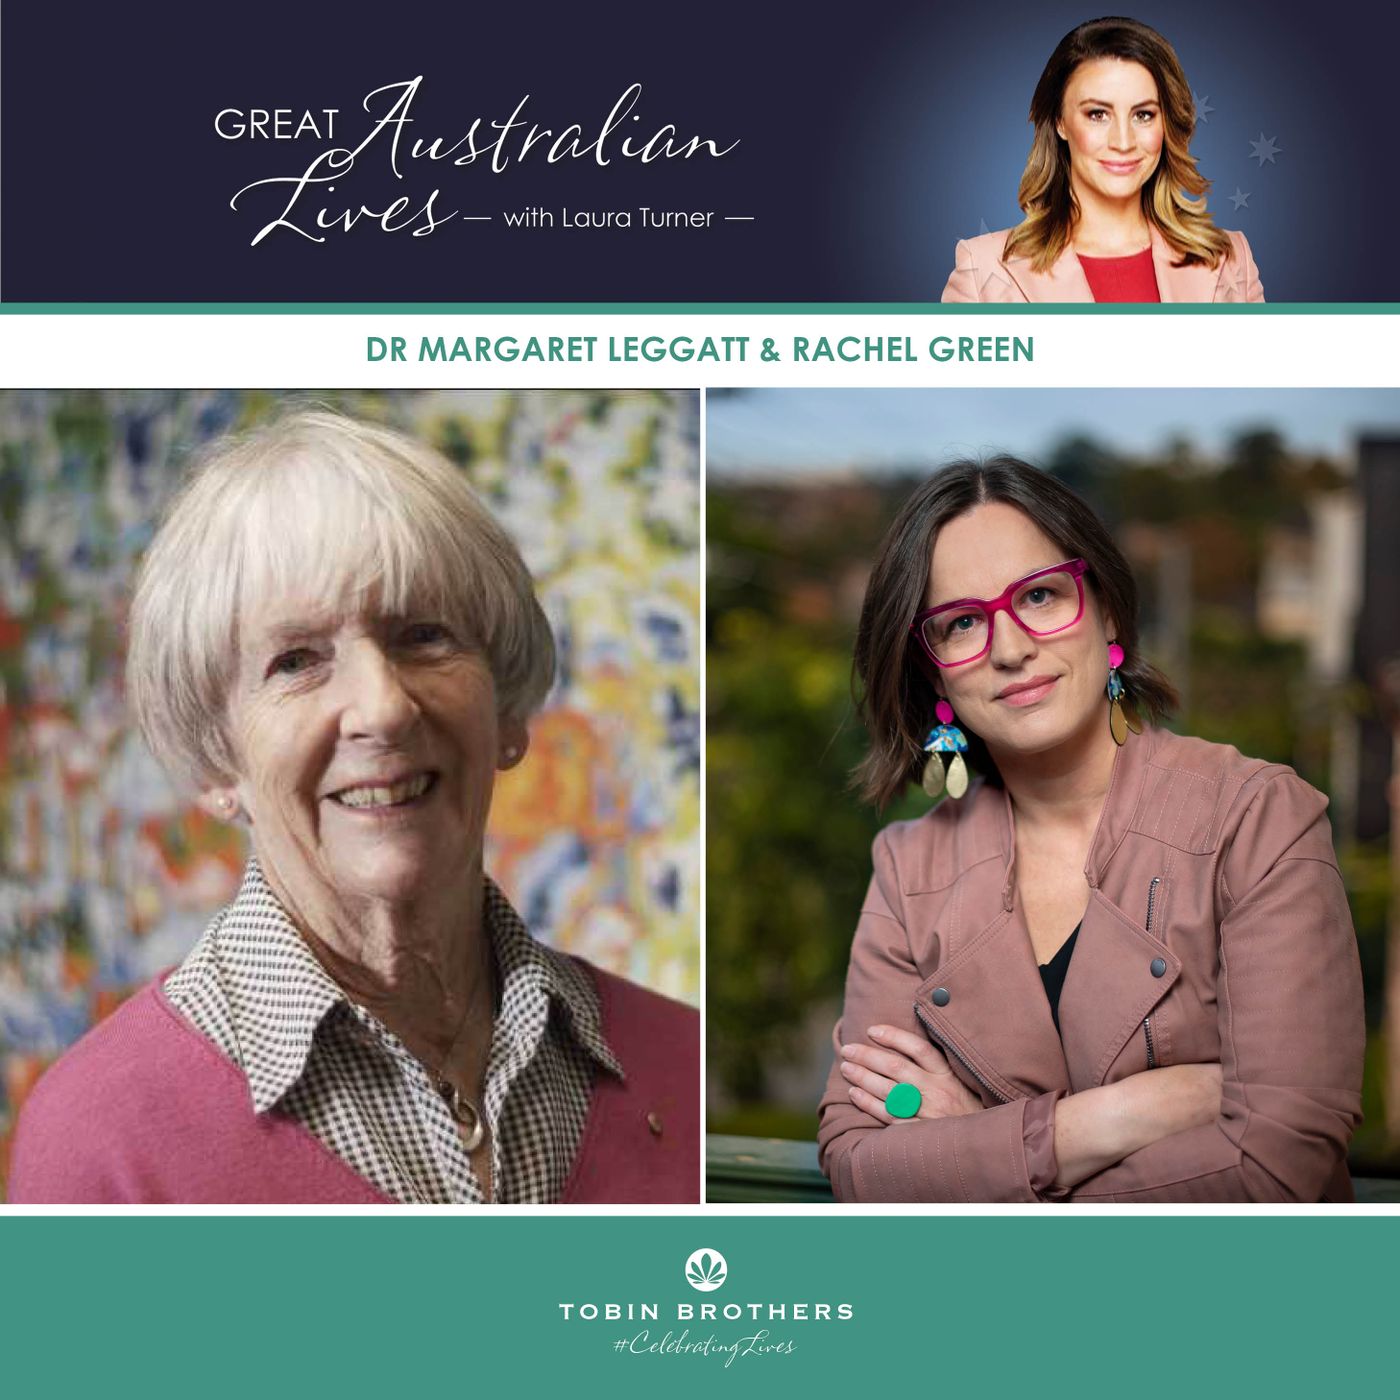 Dr Margaret Leggatt and Rachel Green from SANE's Great Australian Lives